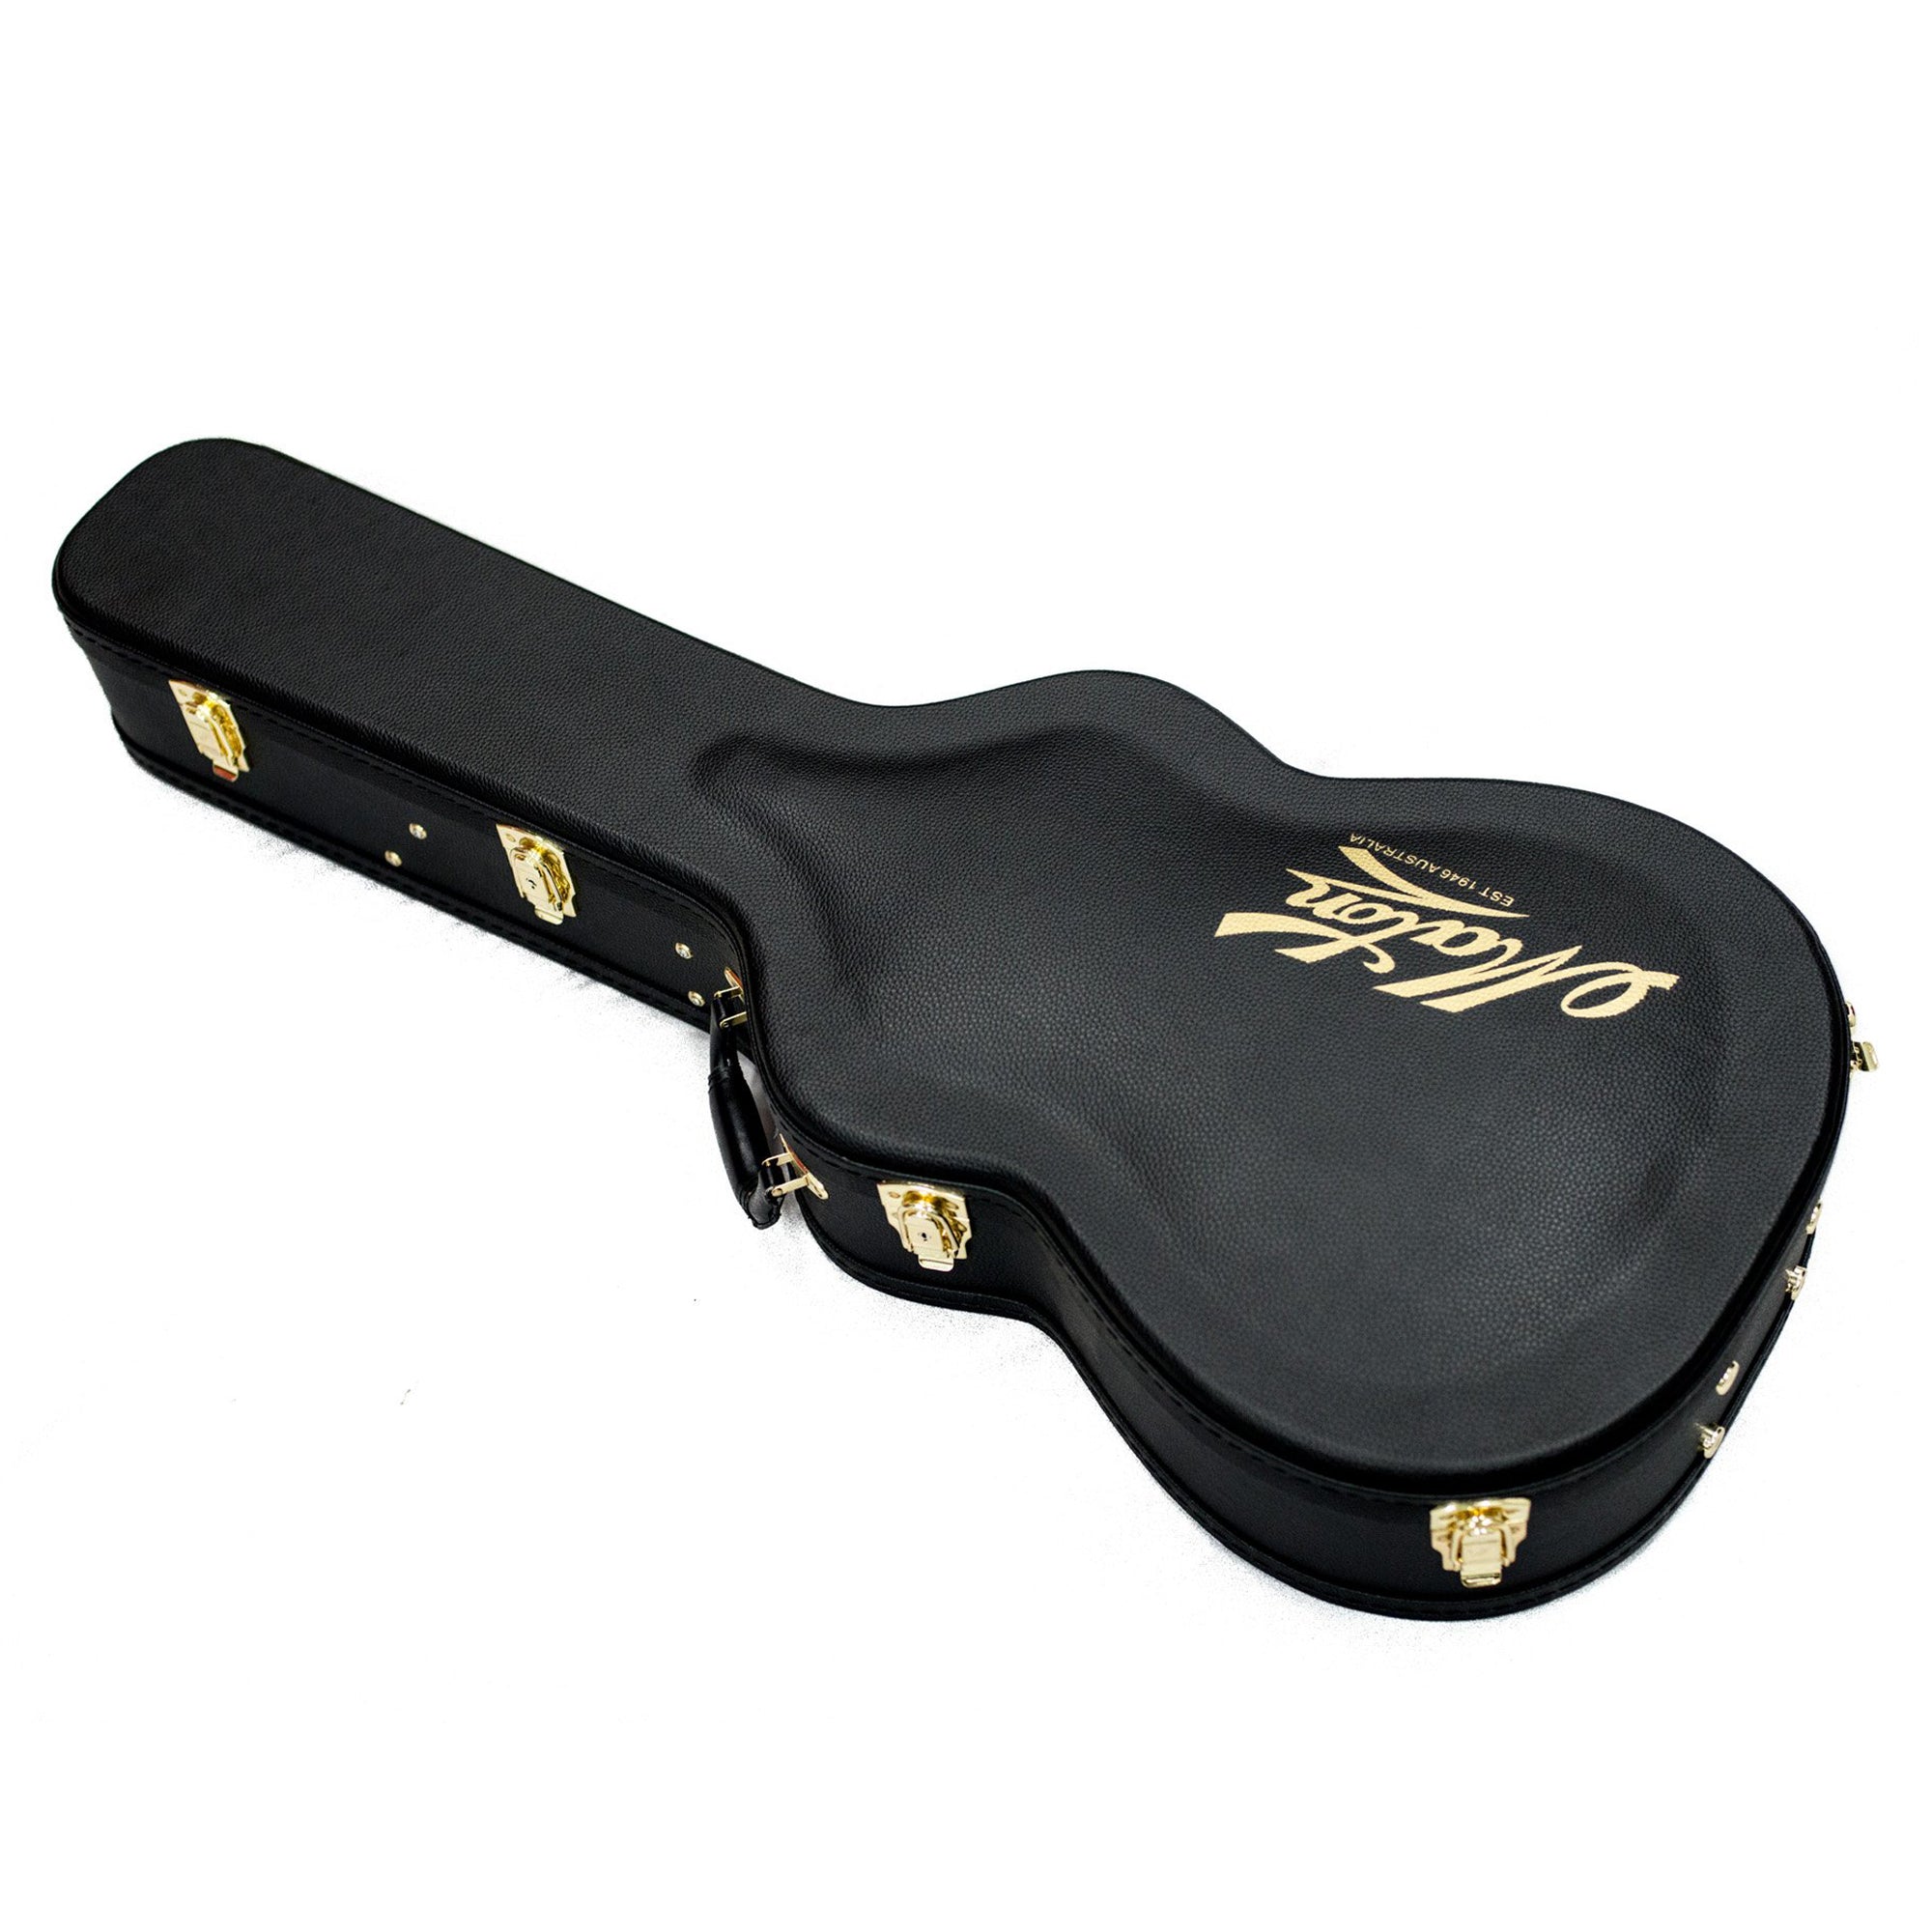 Maton EBW808 "Blackwood Series" Acoustic Guitar